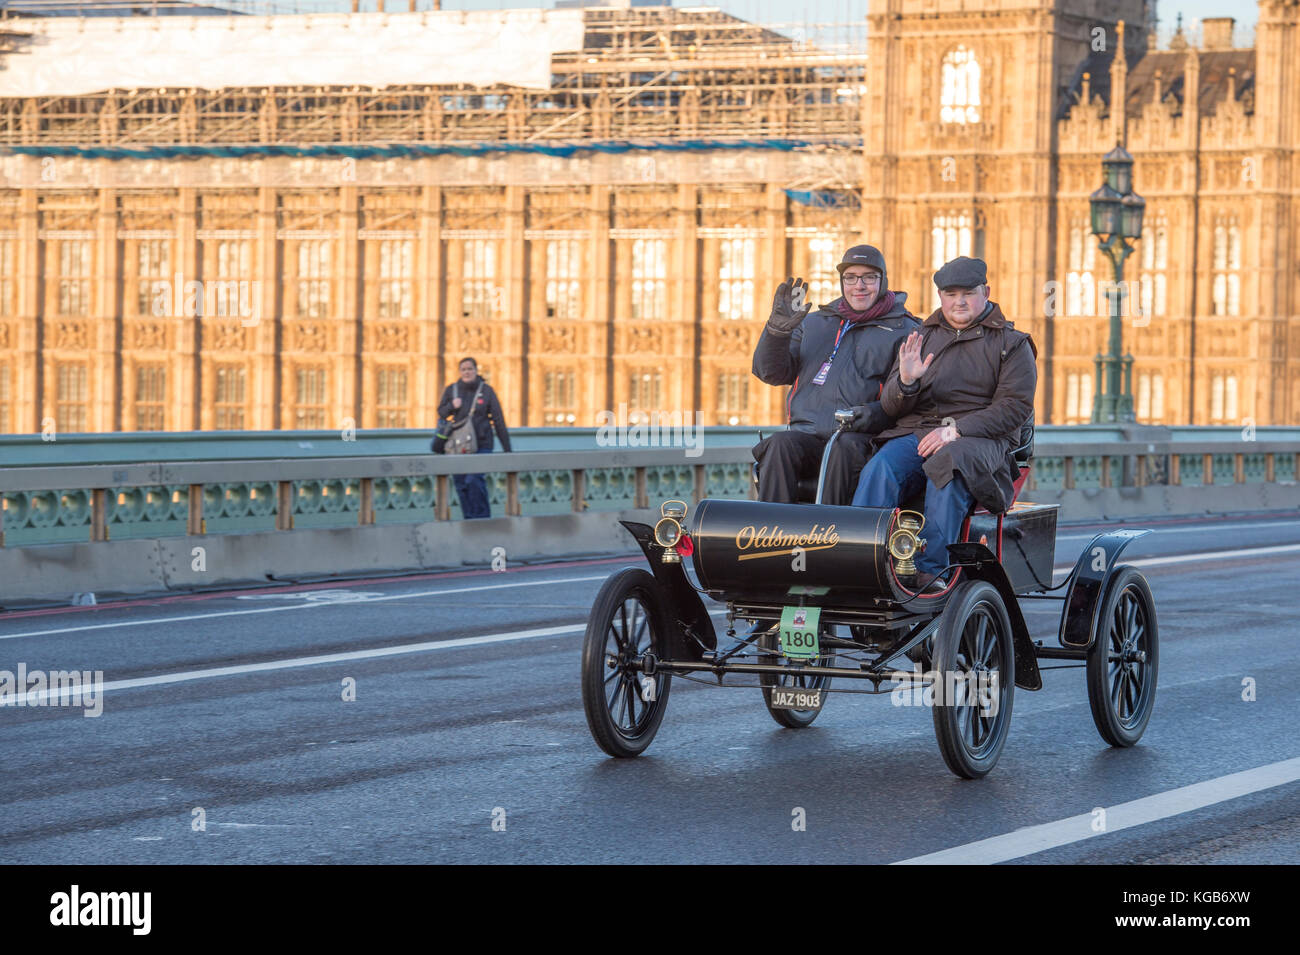 5 novembre 2017. Bonhams de Londres à Brighton, la course de voiture de vétéran, la plus longue course automobile au monde, 1903 Oldsmobile sur le pont de Westminster. Banque D'Images